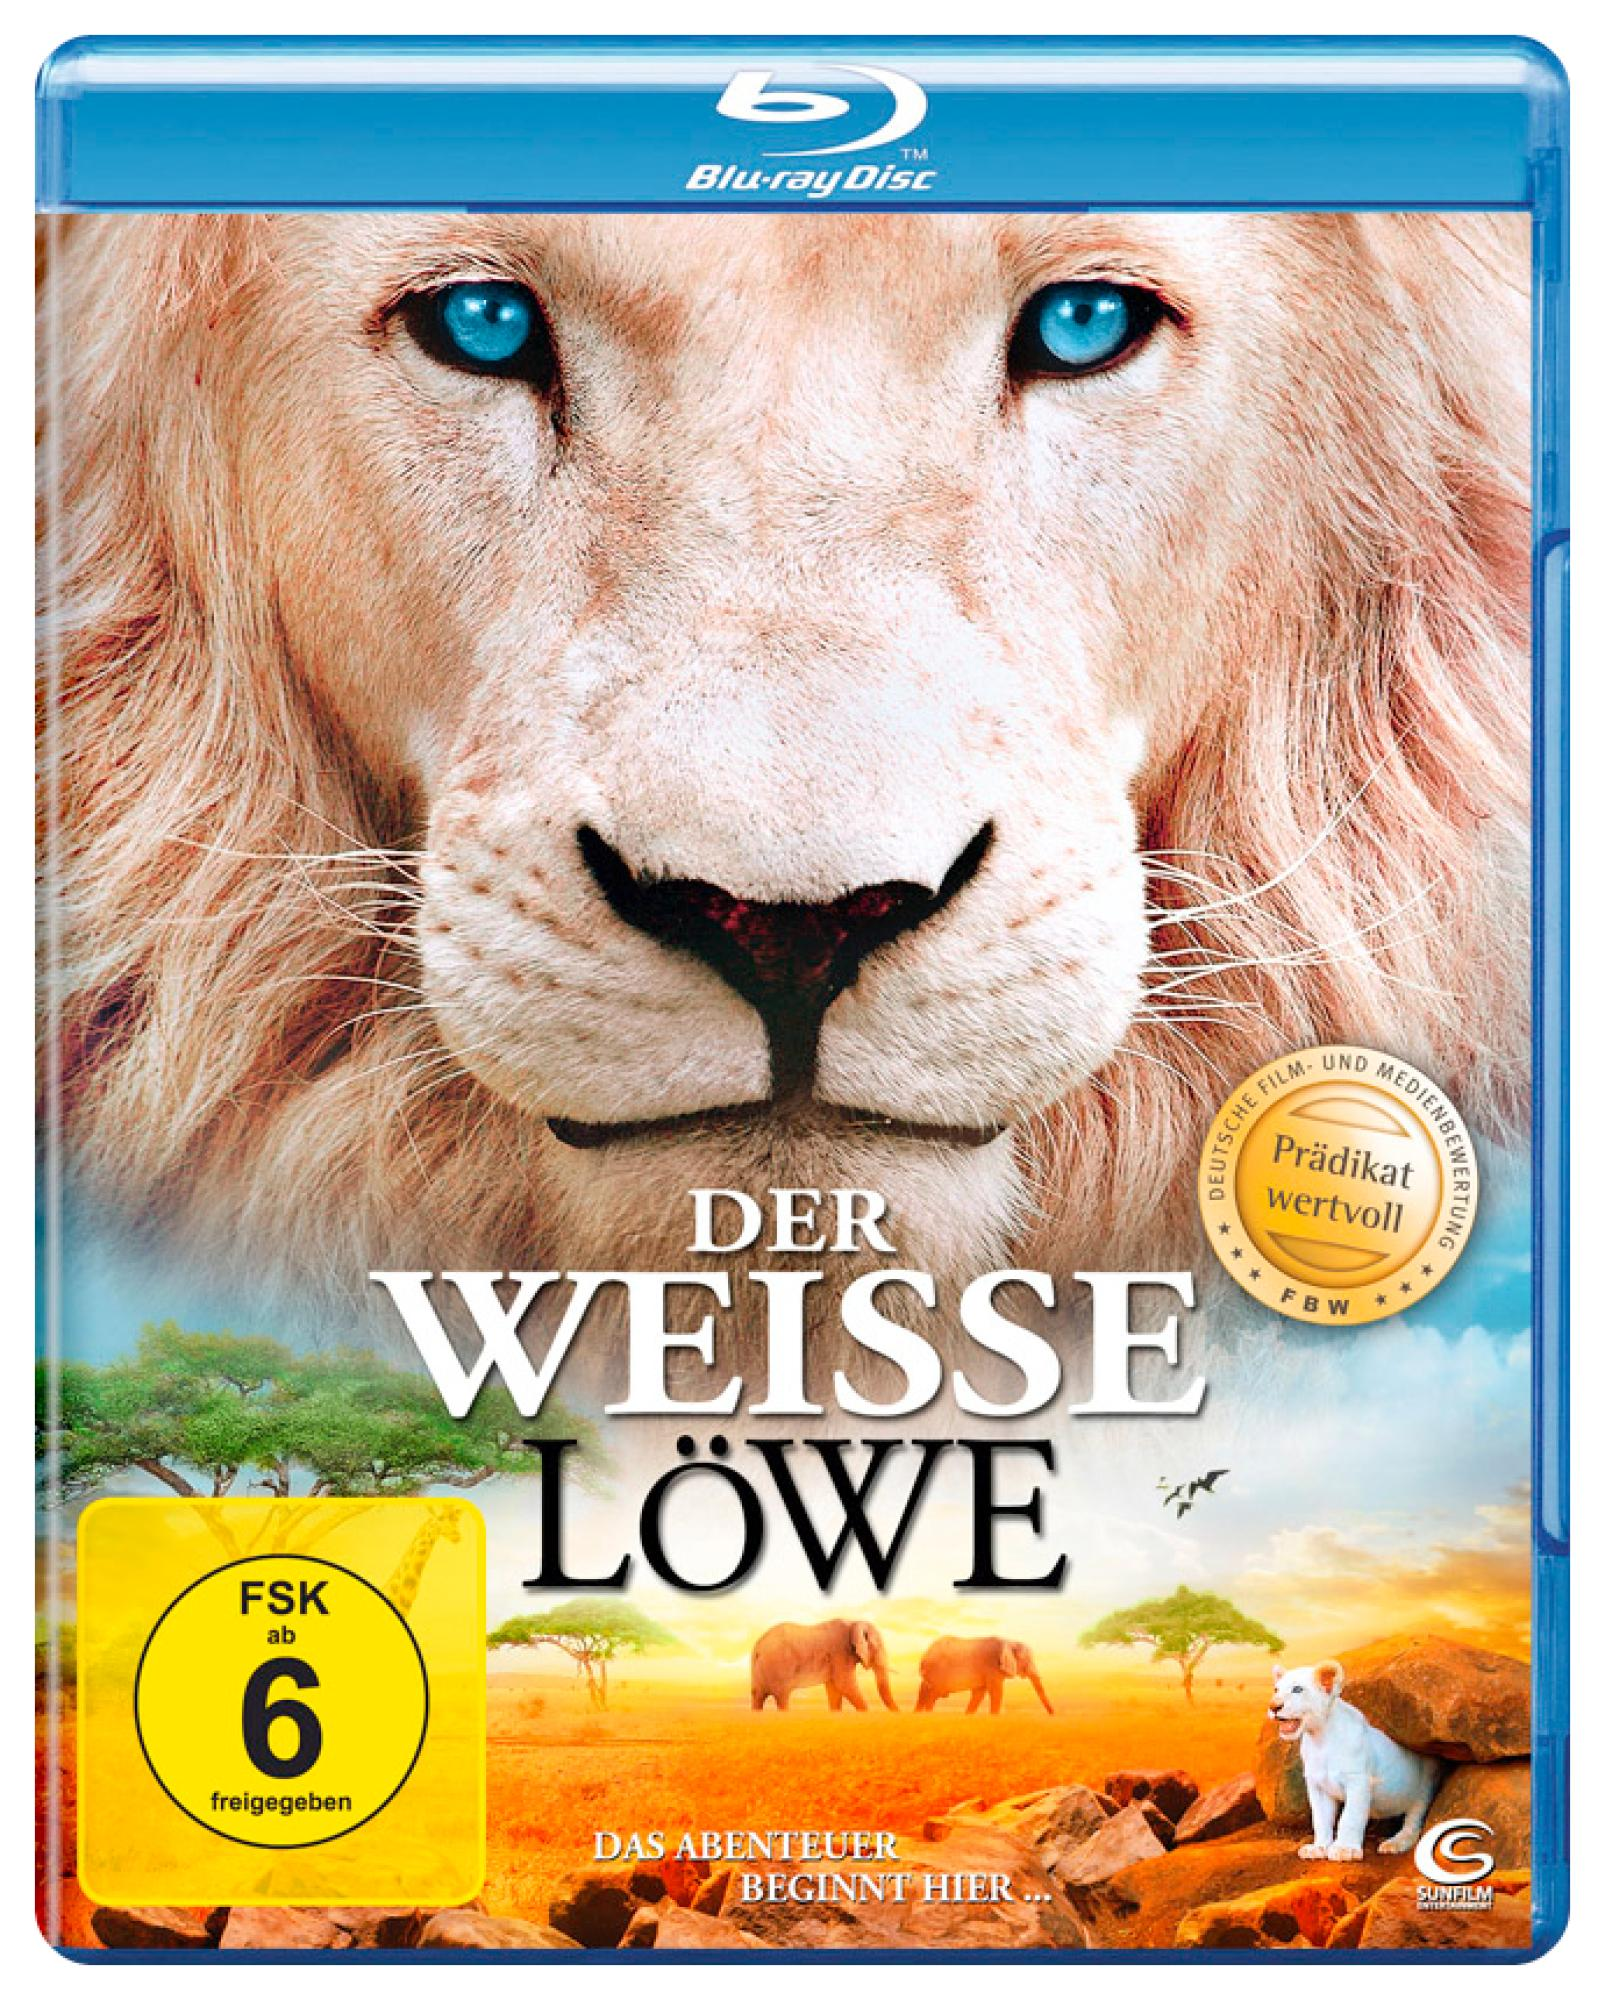 Löwe weiße Der Blu-ray